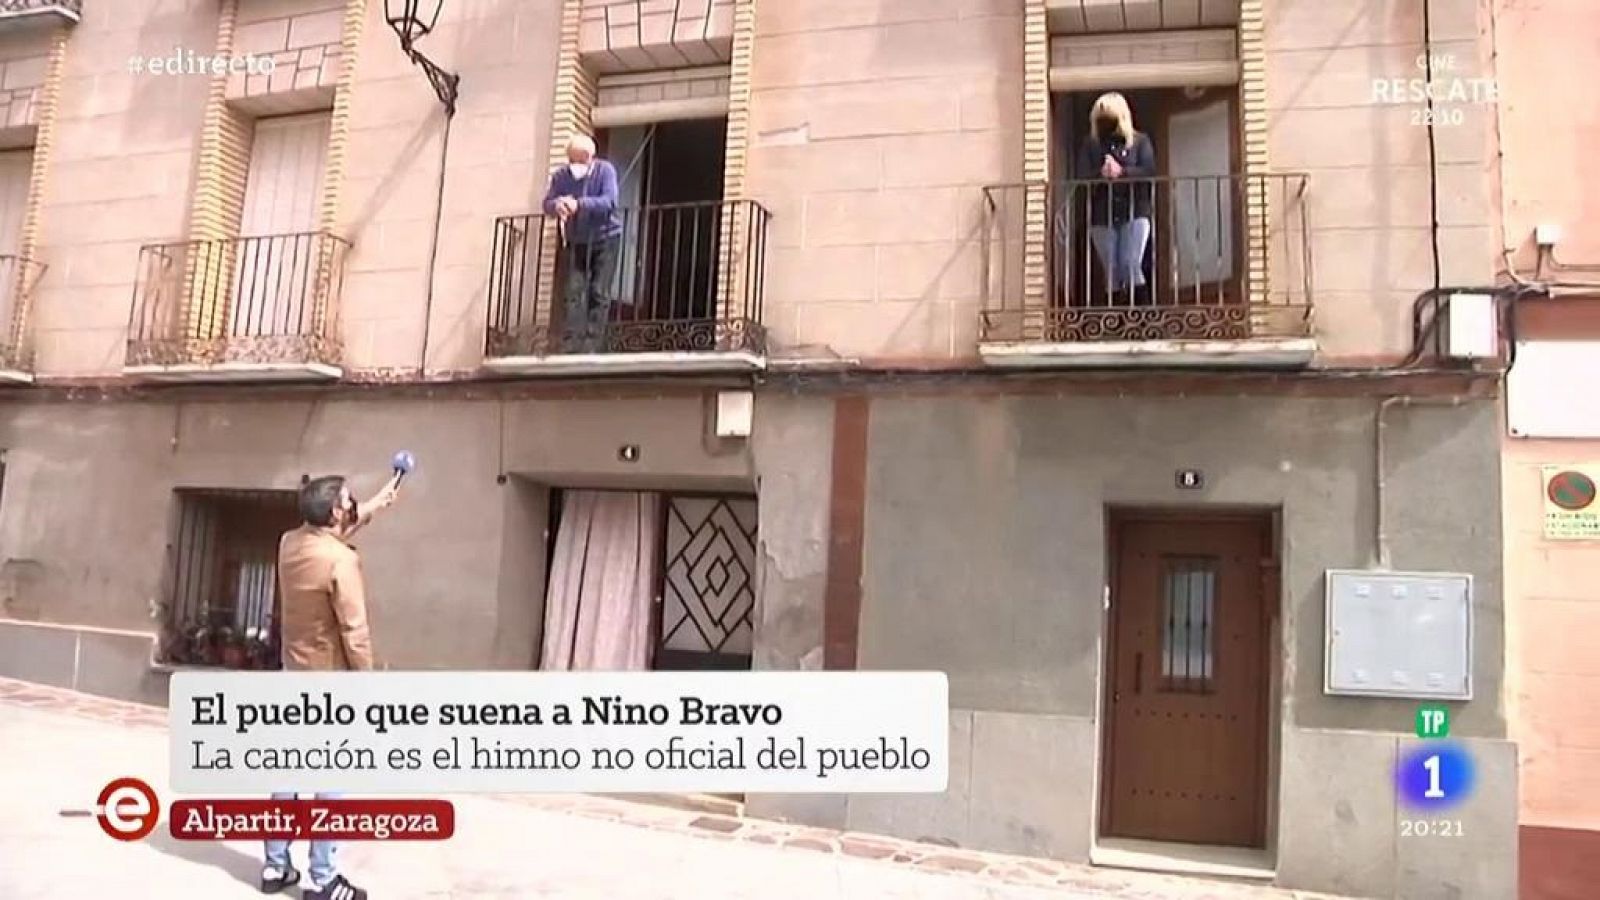 El pueblo de Zaragoza con voz de Nino Bravo: Alpartir